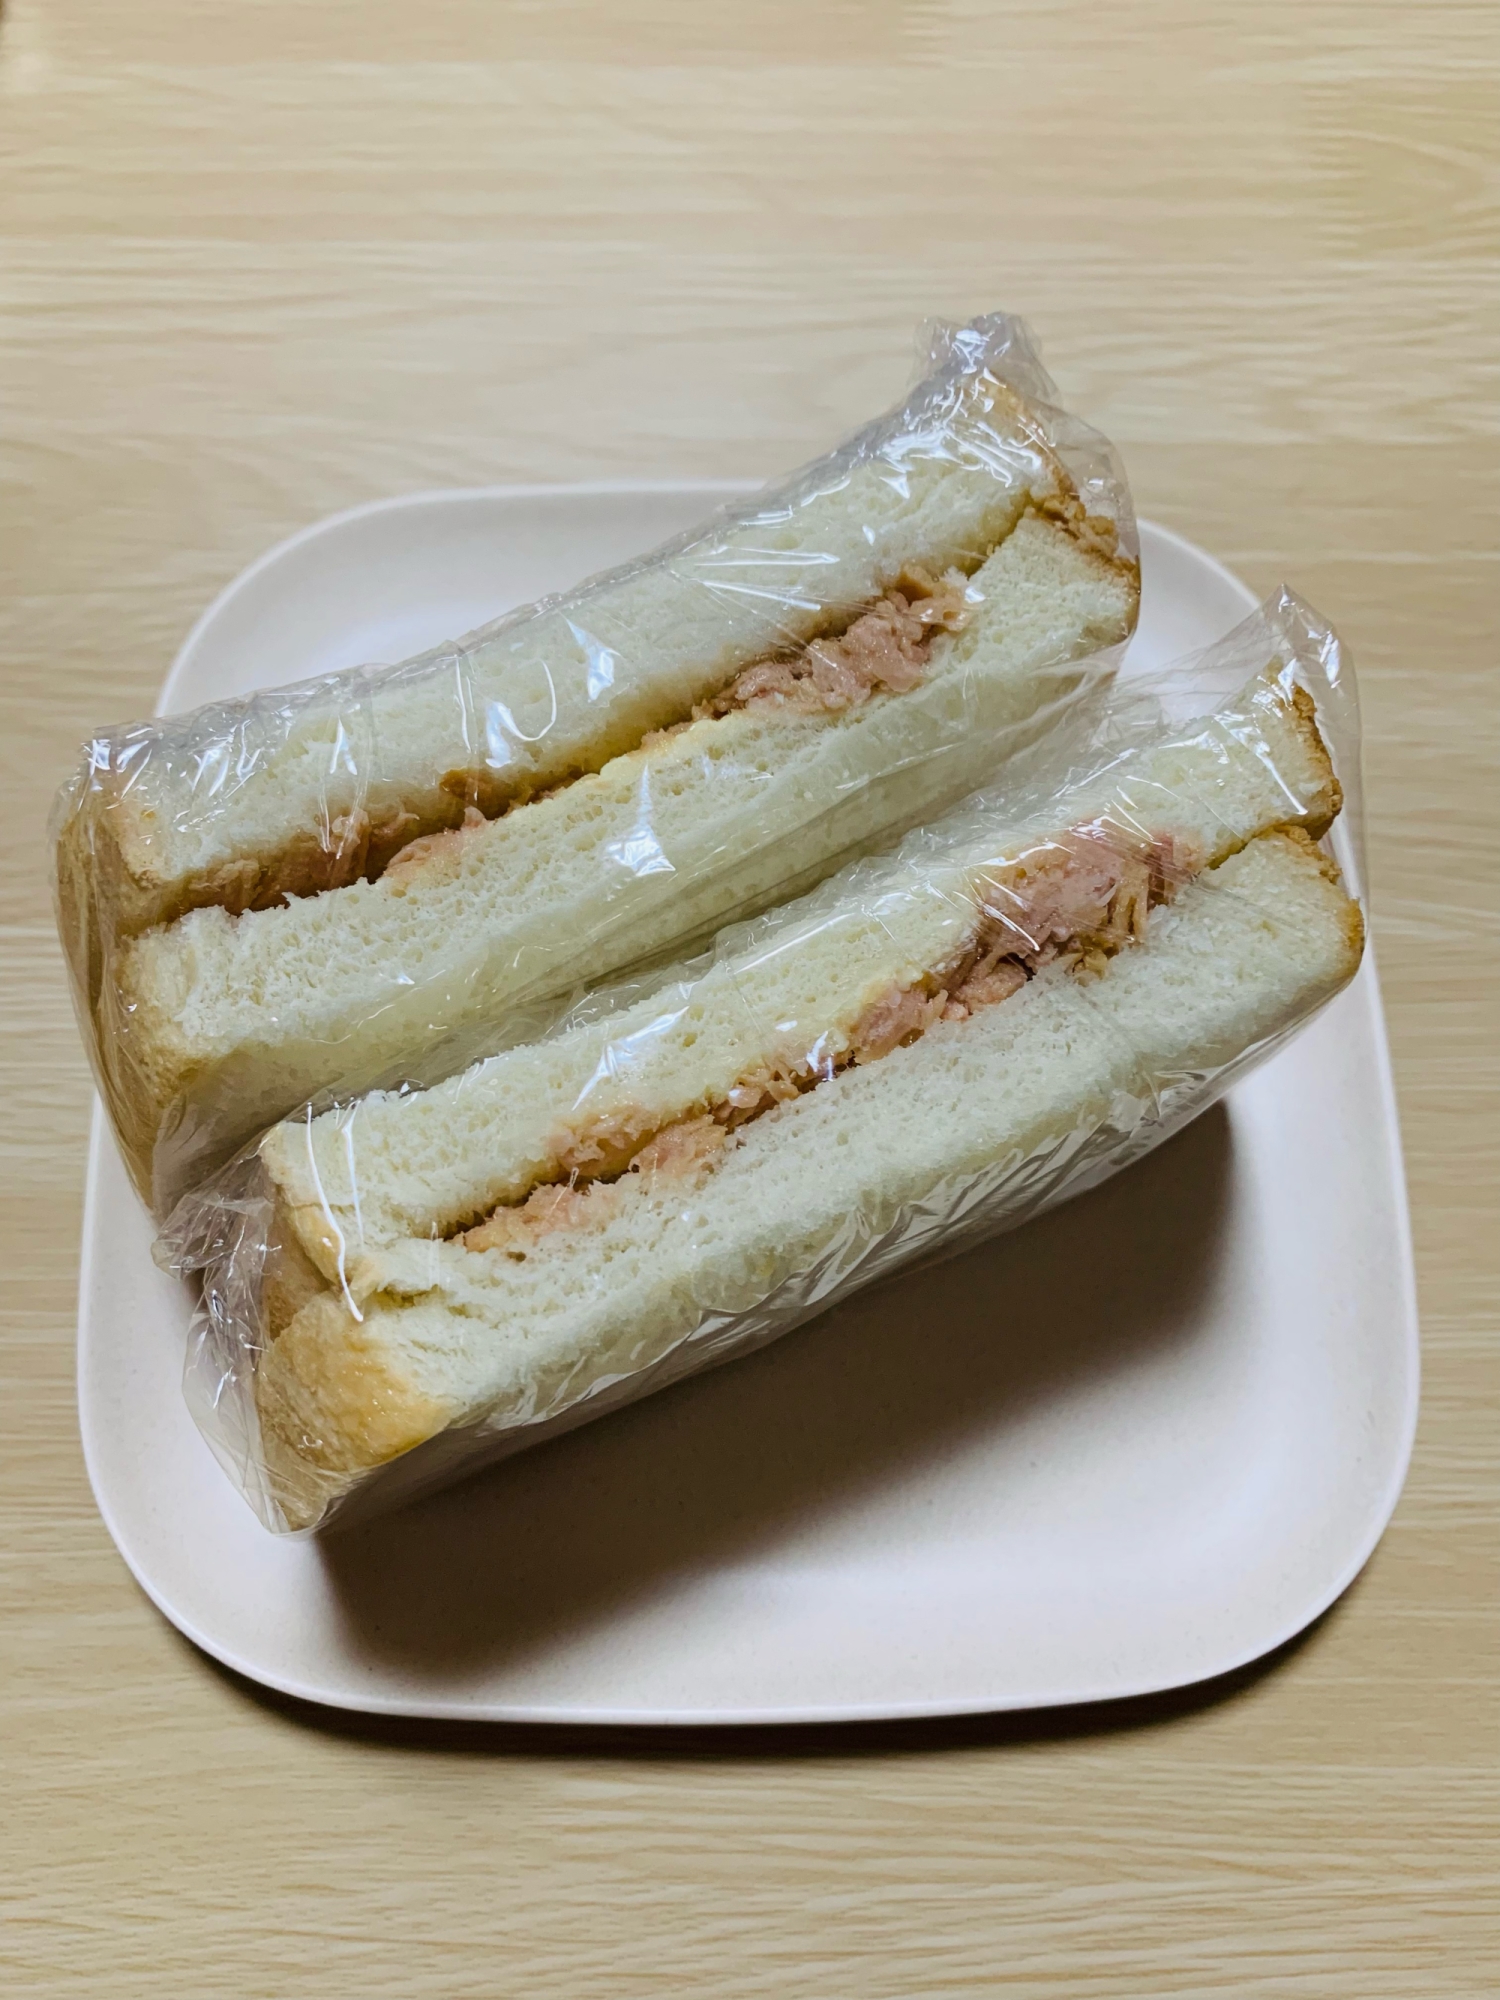 サンドイッチ♡ツナサンド